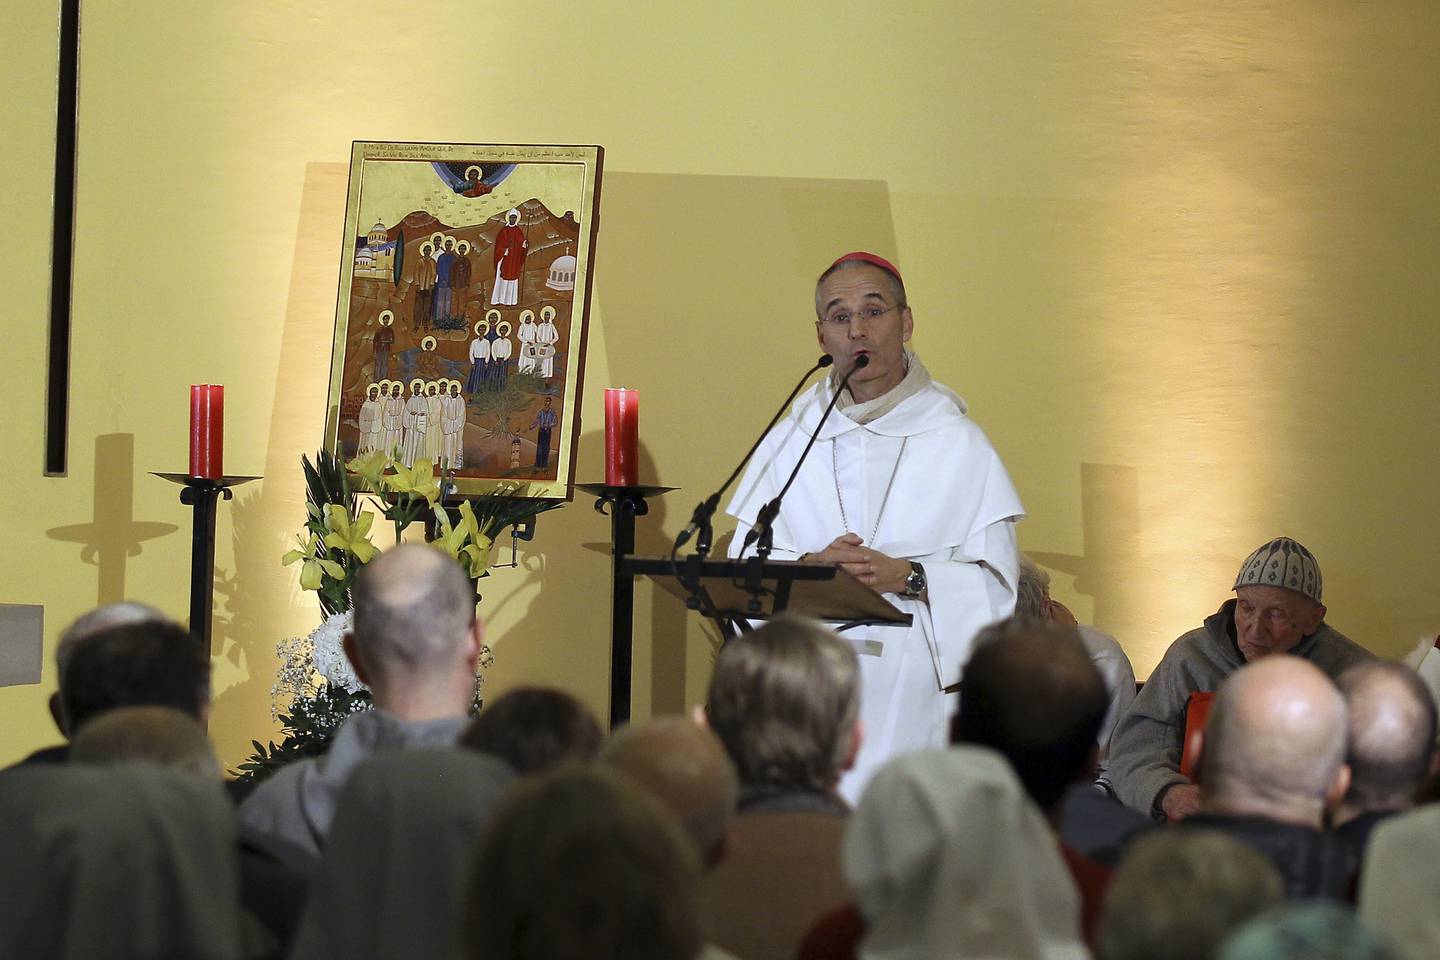 FORTSETTER: Erkebiskop i Alger vil fortsette arbeidet for de svakeste i samfunnet.